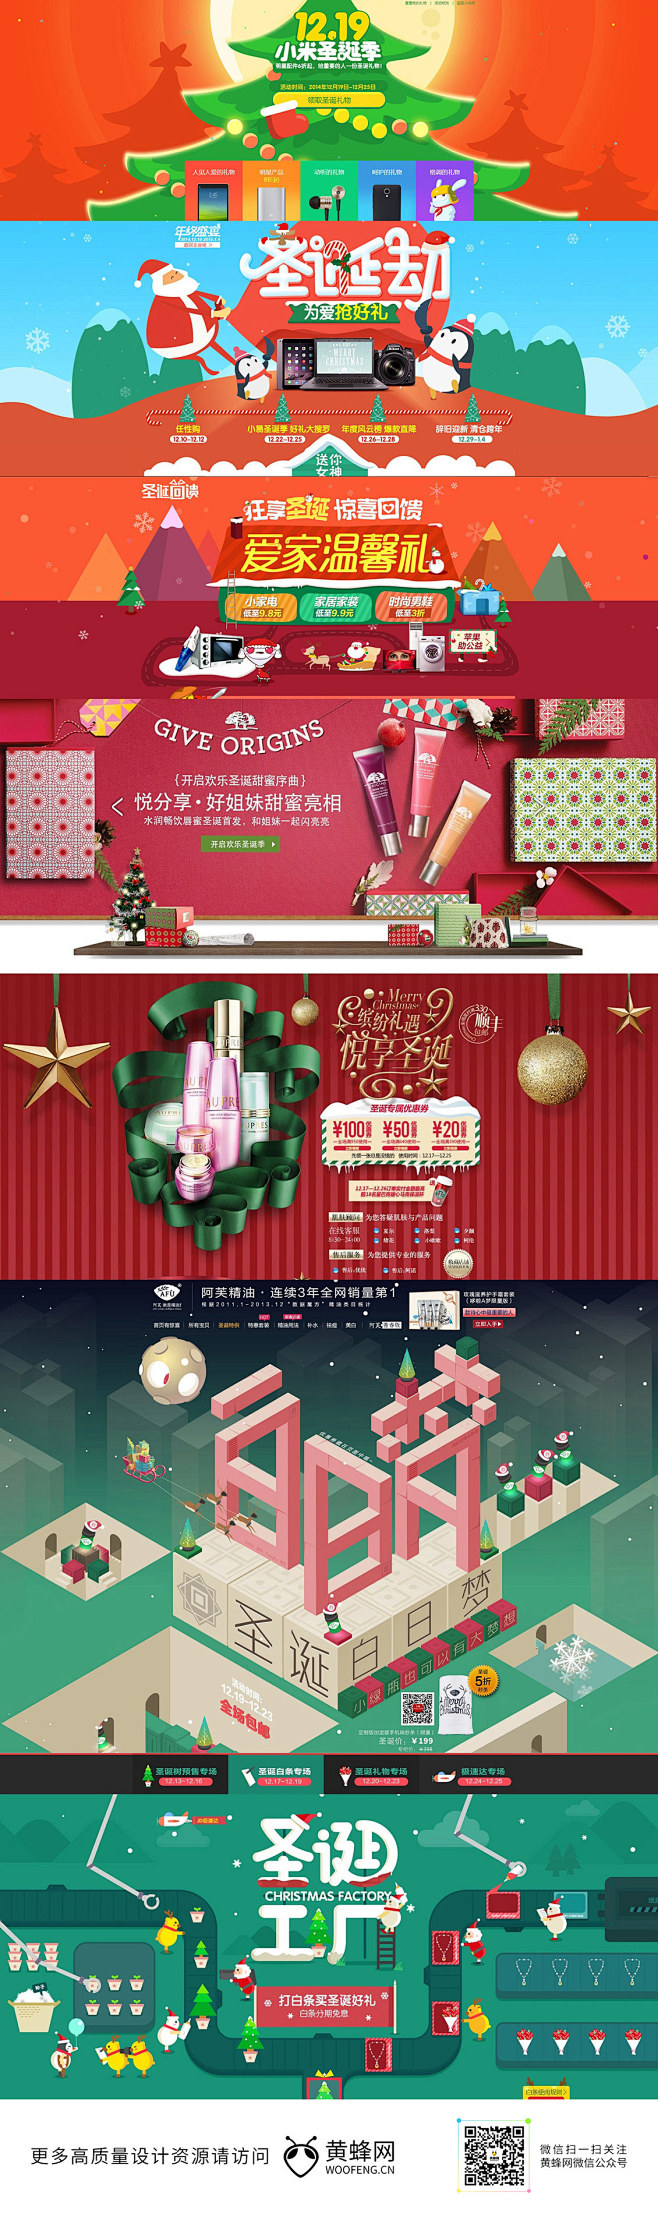 圣诞节banner海报设计 来源自黄蜂网...